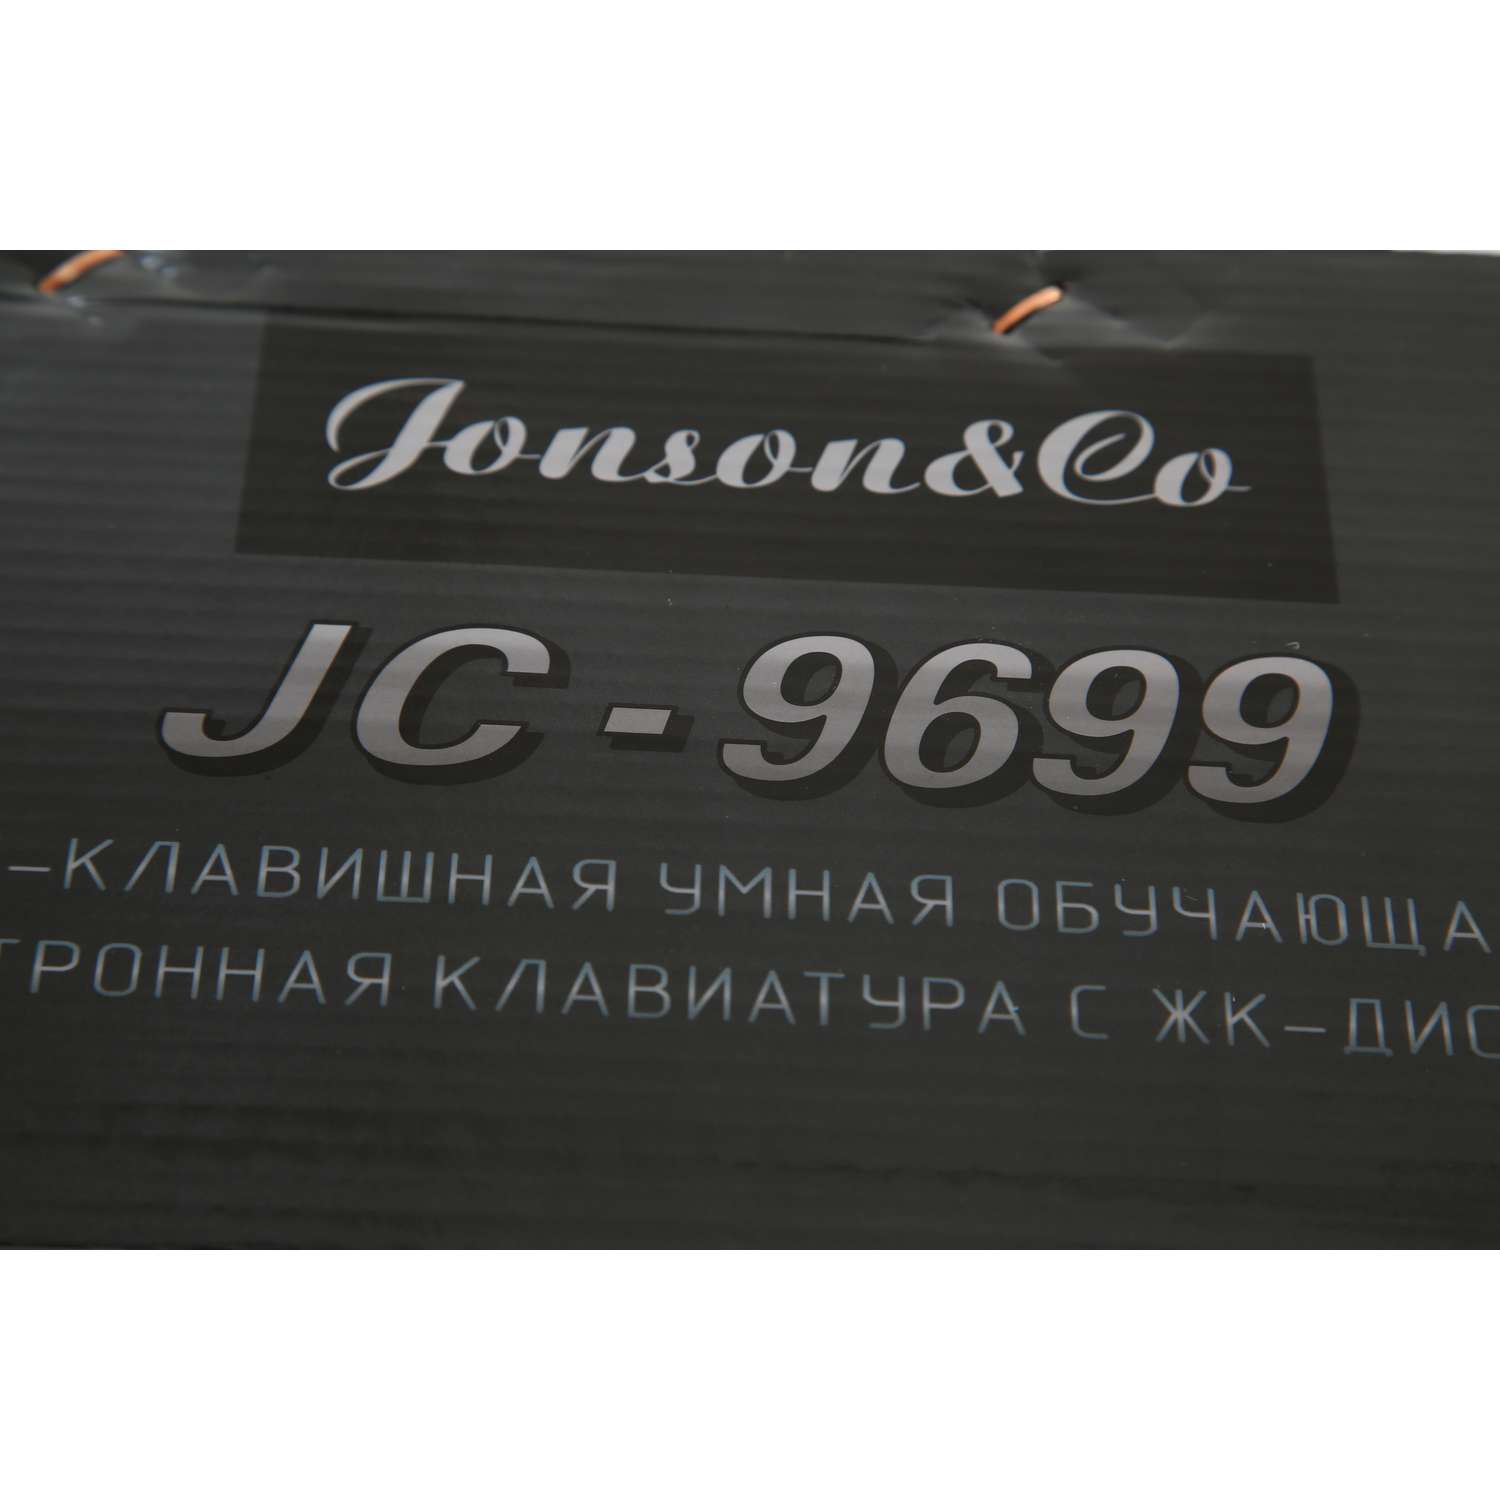 Синтезатор Jonson Co JC-9699 - фото 7